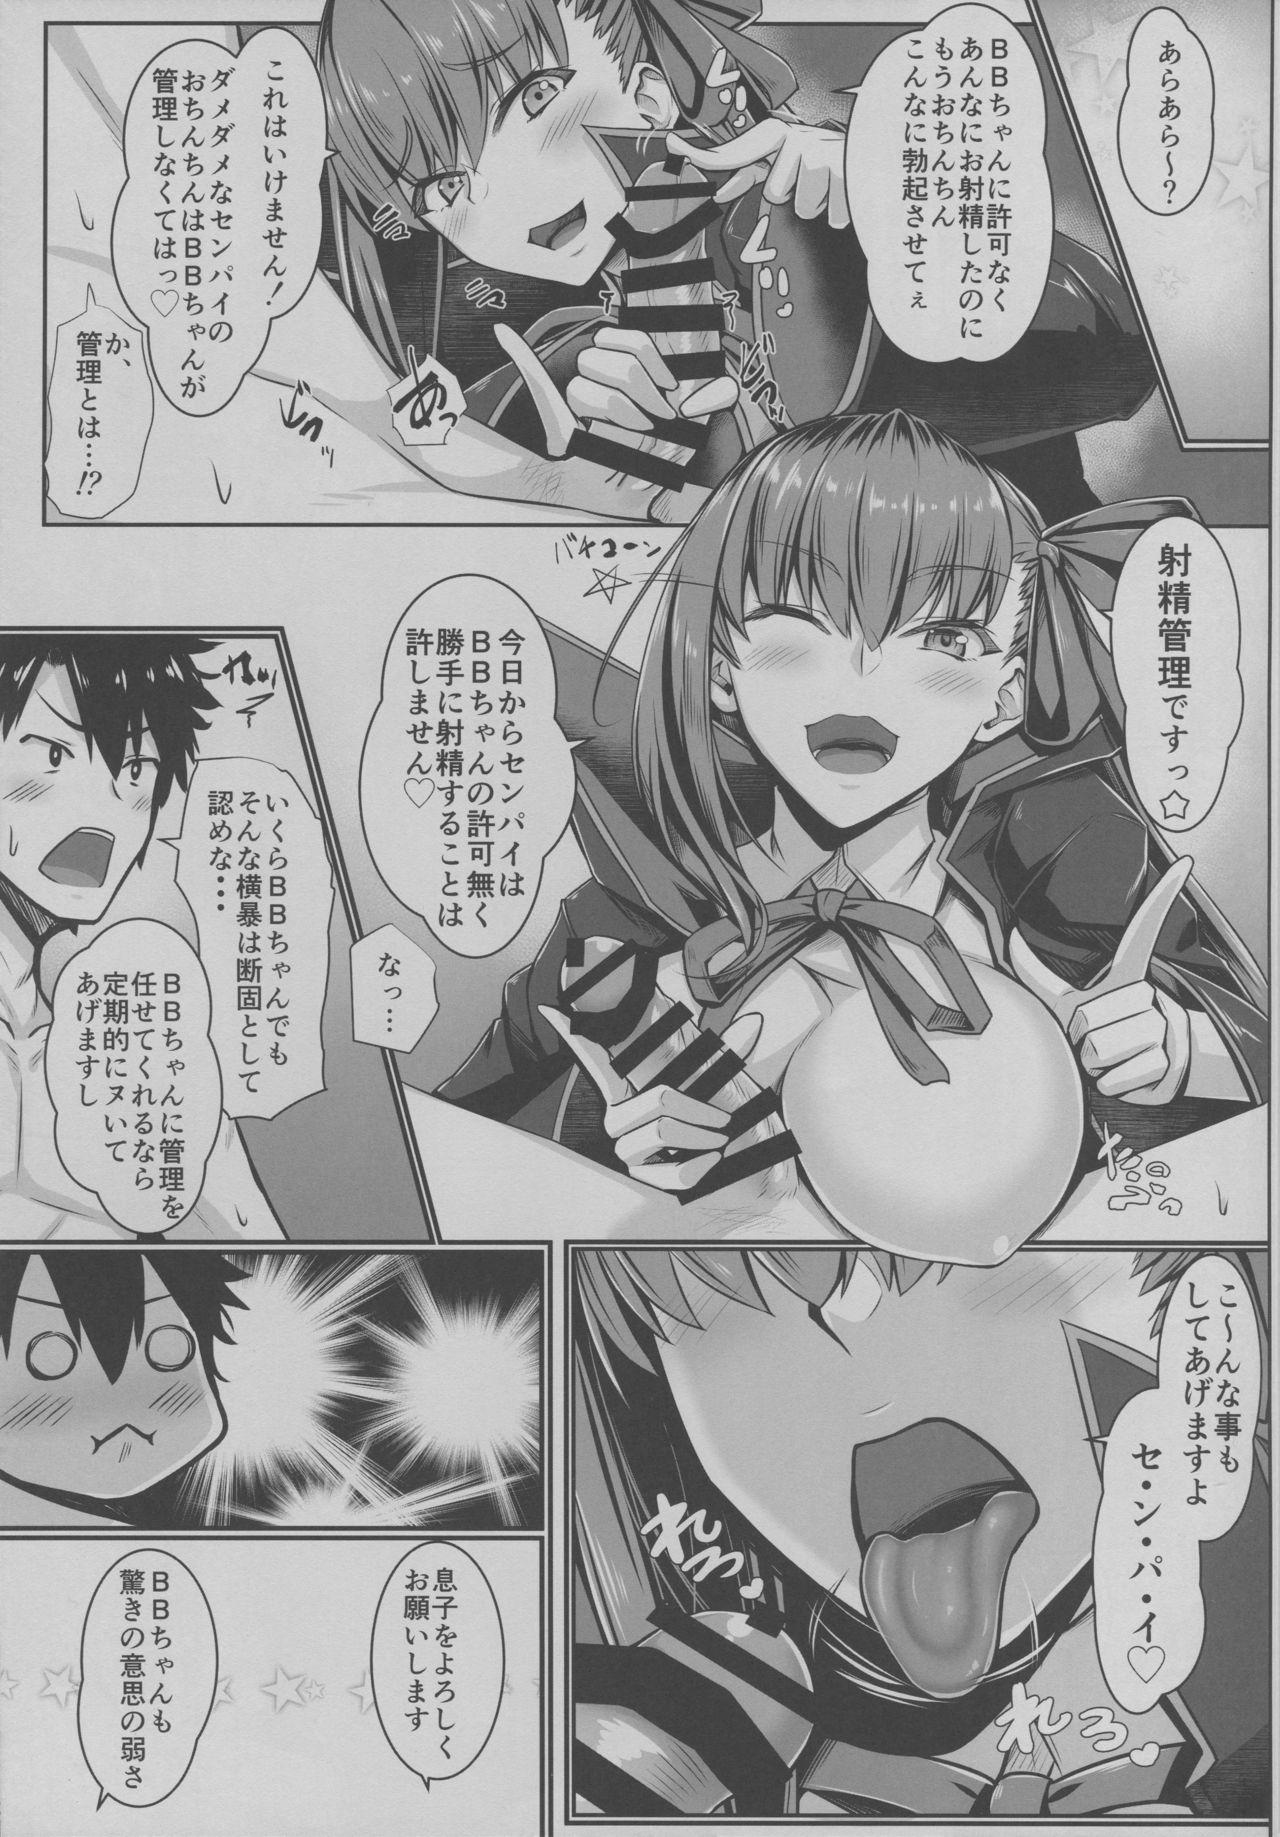 Piss BB-chan no Koto nanka Zenzen Suki ja Nain dakara ne! - Fate grand order Assfingering - Page 10